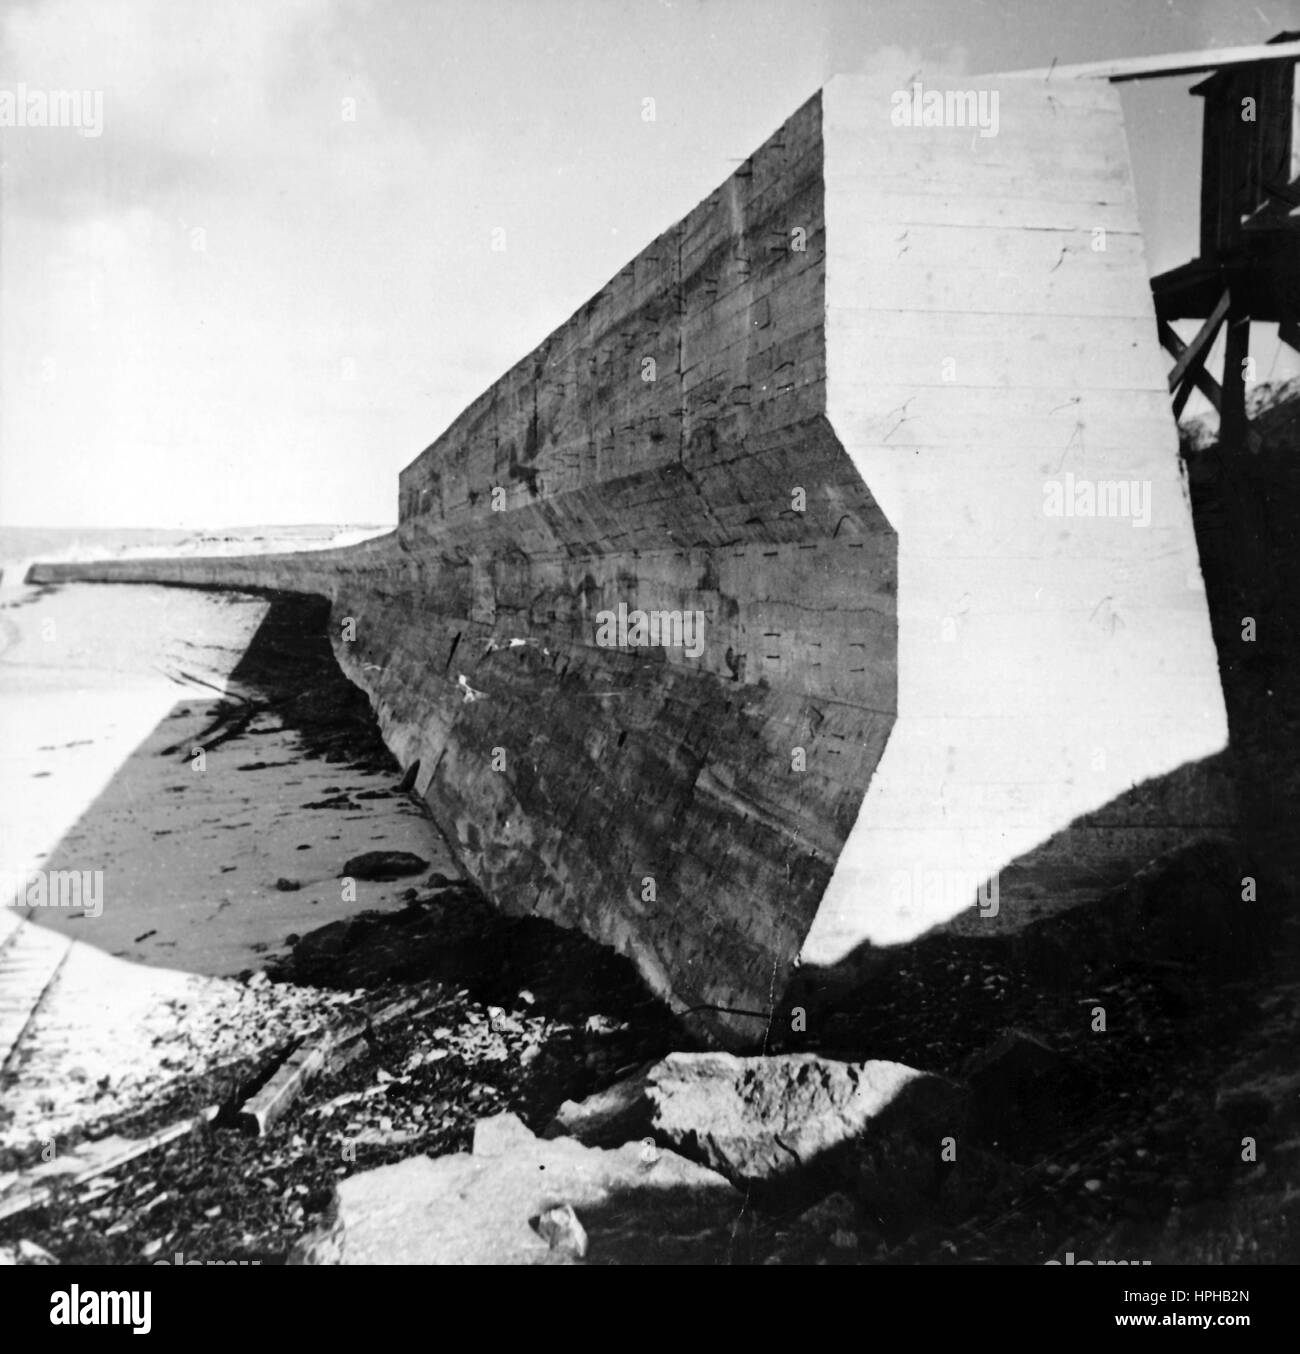 L'image de propagande nazie montre un mur antichar sur le mur de l'Atlantique. Publié en avril 1943. Fotoarchiv für Zeitgeschichte - PAS DE SERVICE DE FIL - | utilisation dans le monde entier Banque D'Images